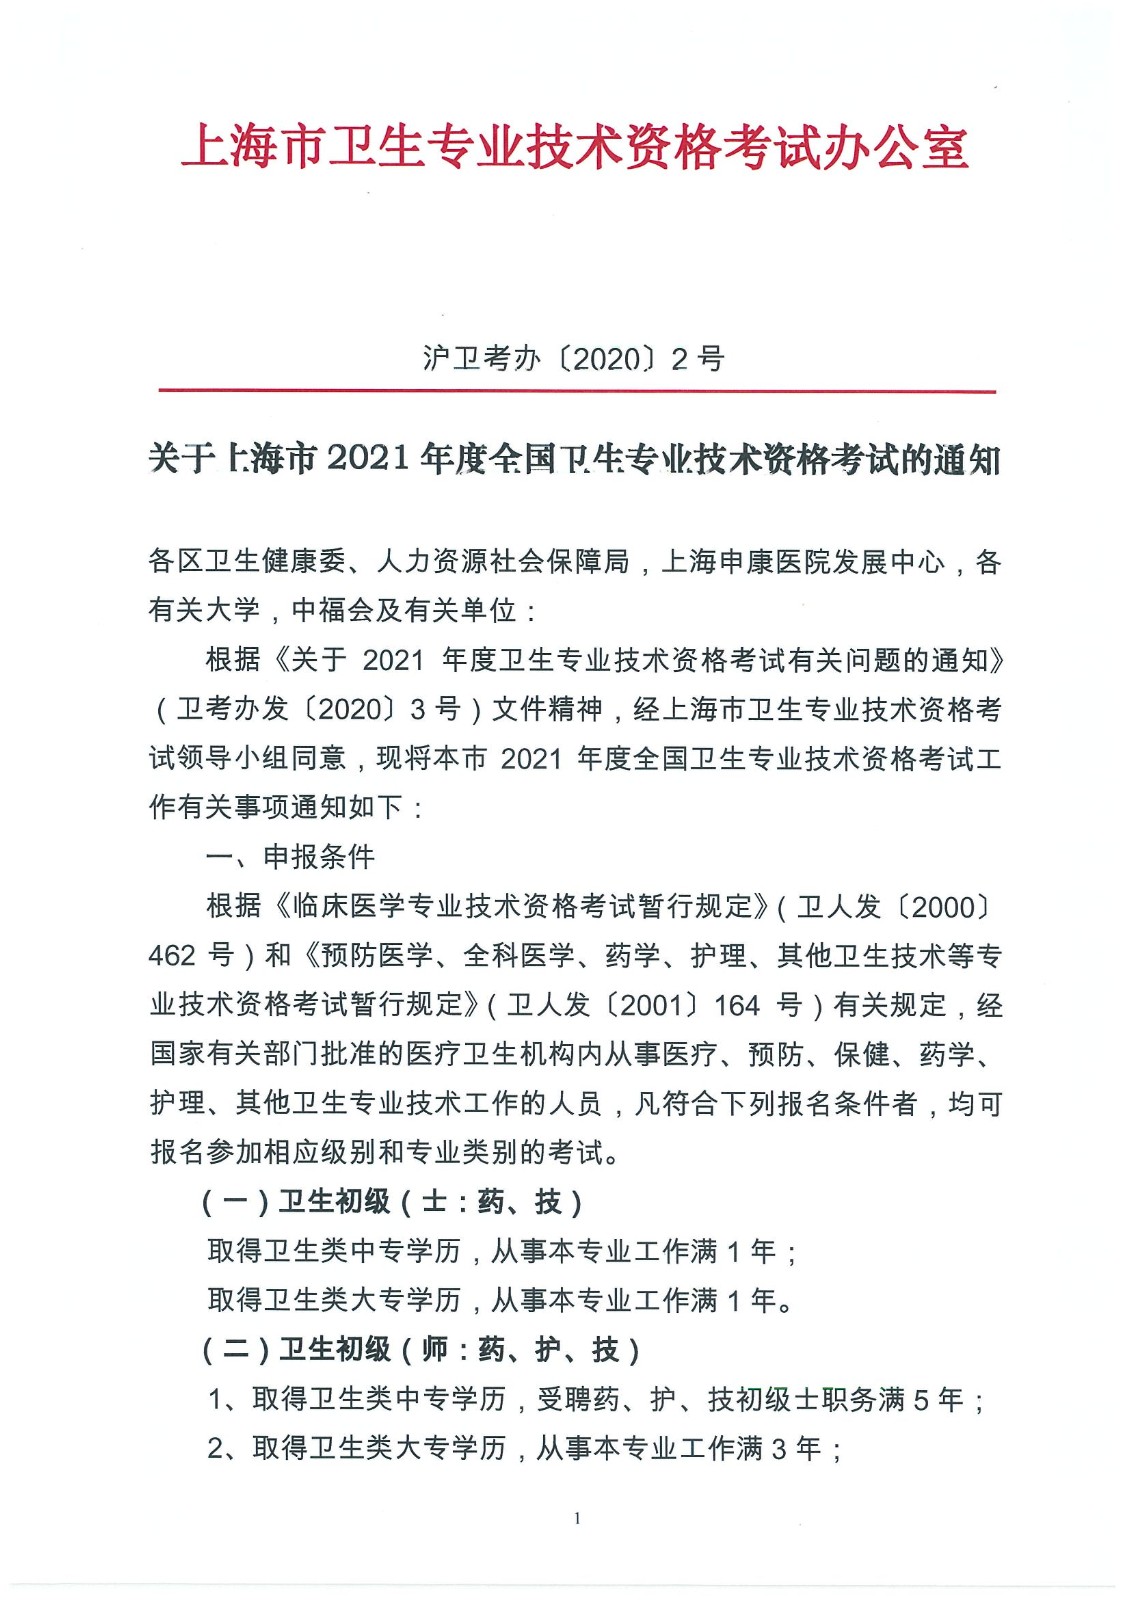 上海市2021年度全国卫生专业技术资格考试通知